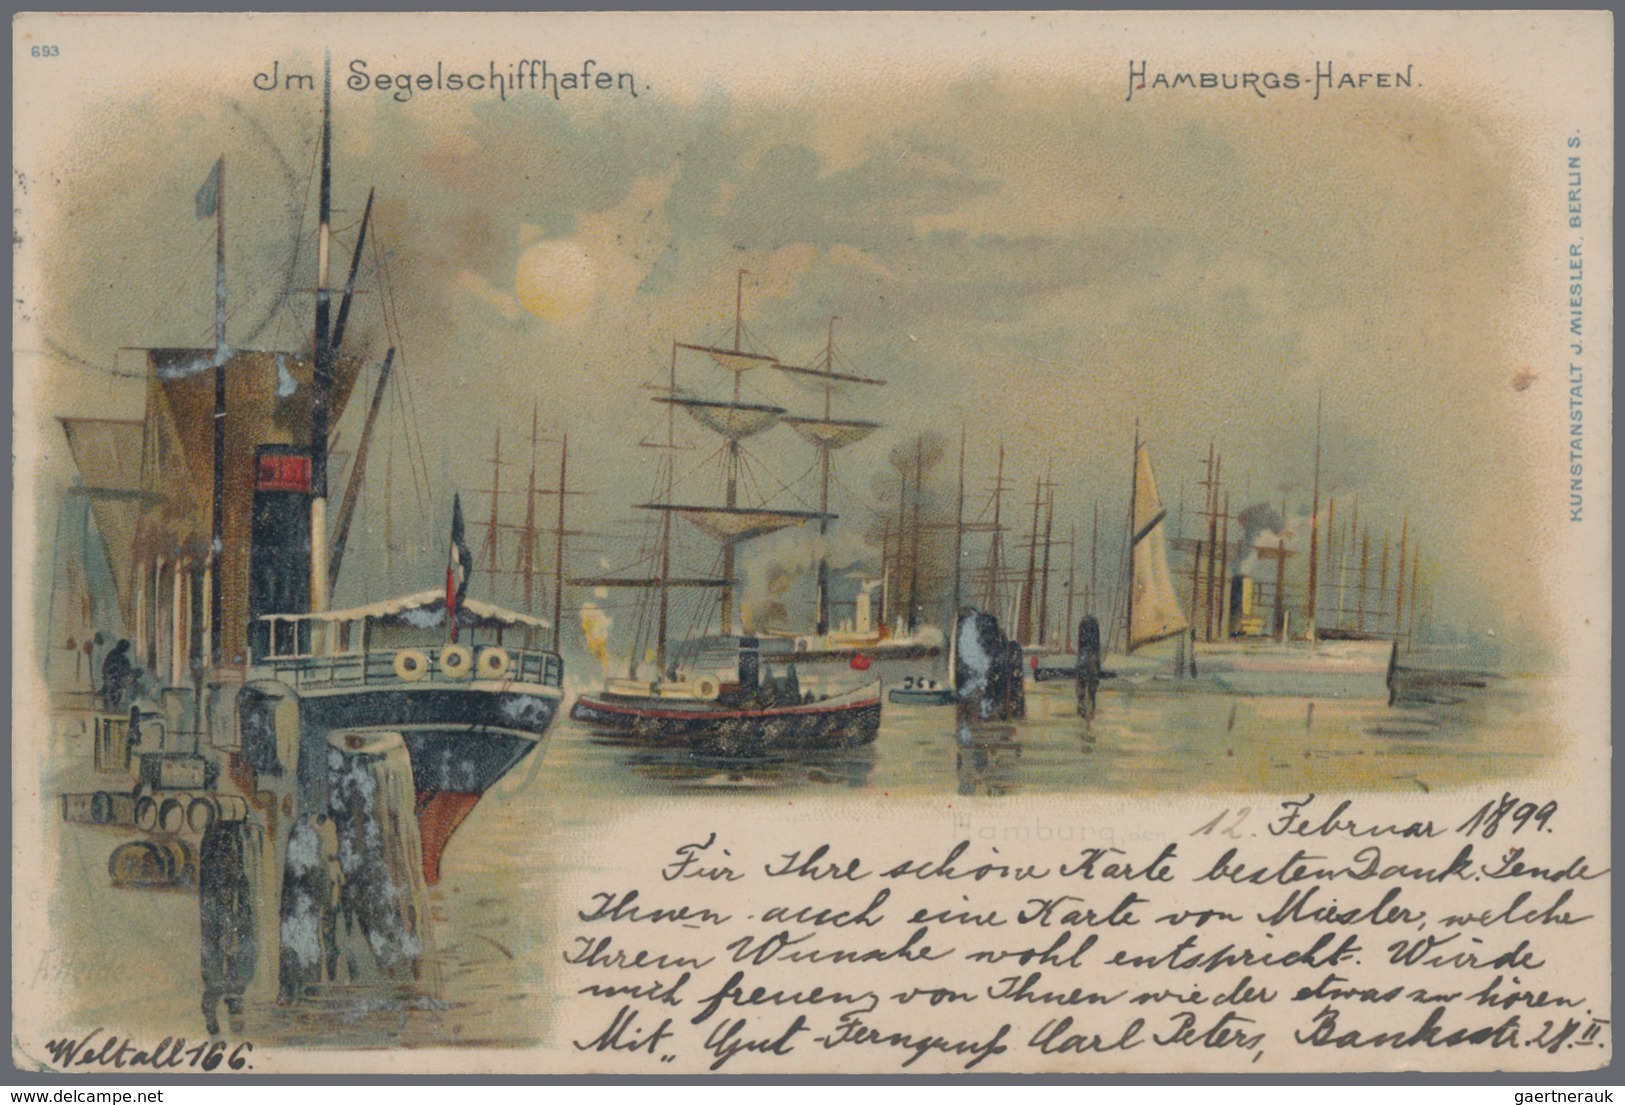 Ansichtskarten: Hamburg: 1897-1909: Partie von 24 frühen Ansichtskarten, gebraucht oder ungebraucht,